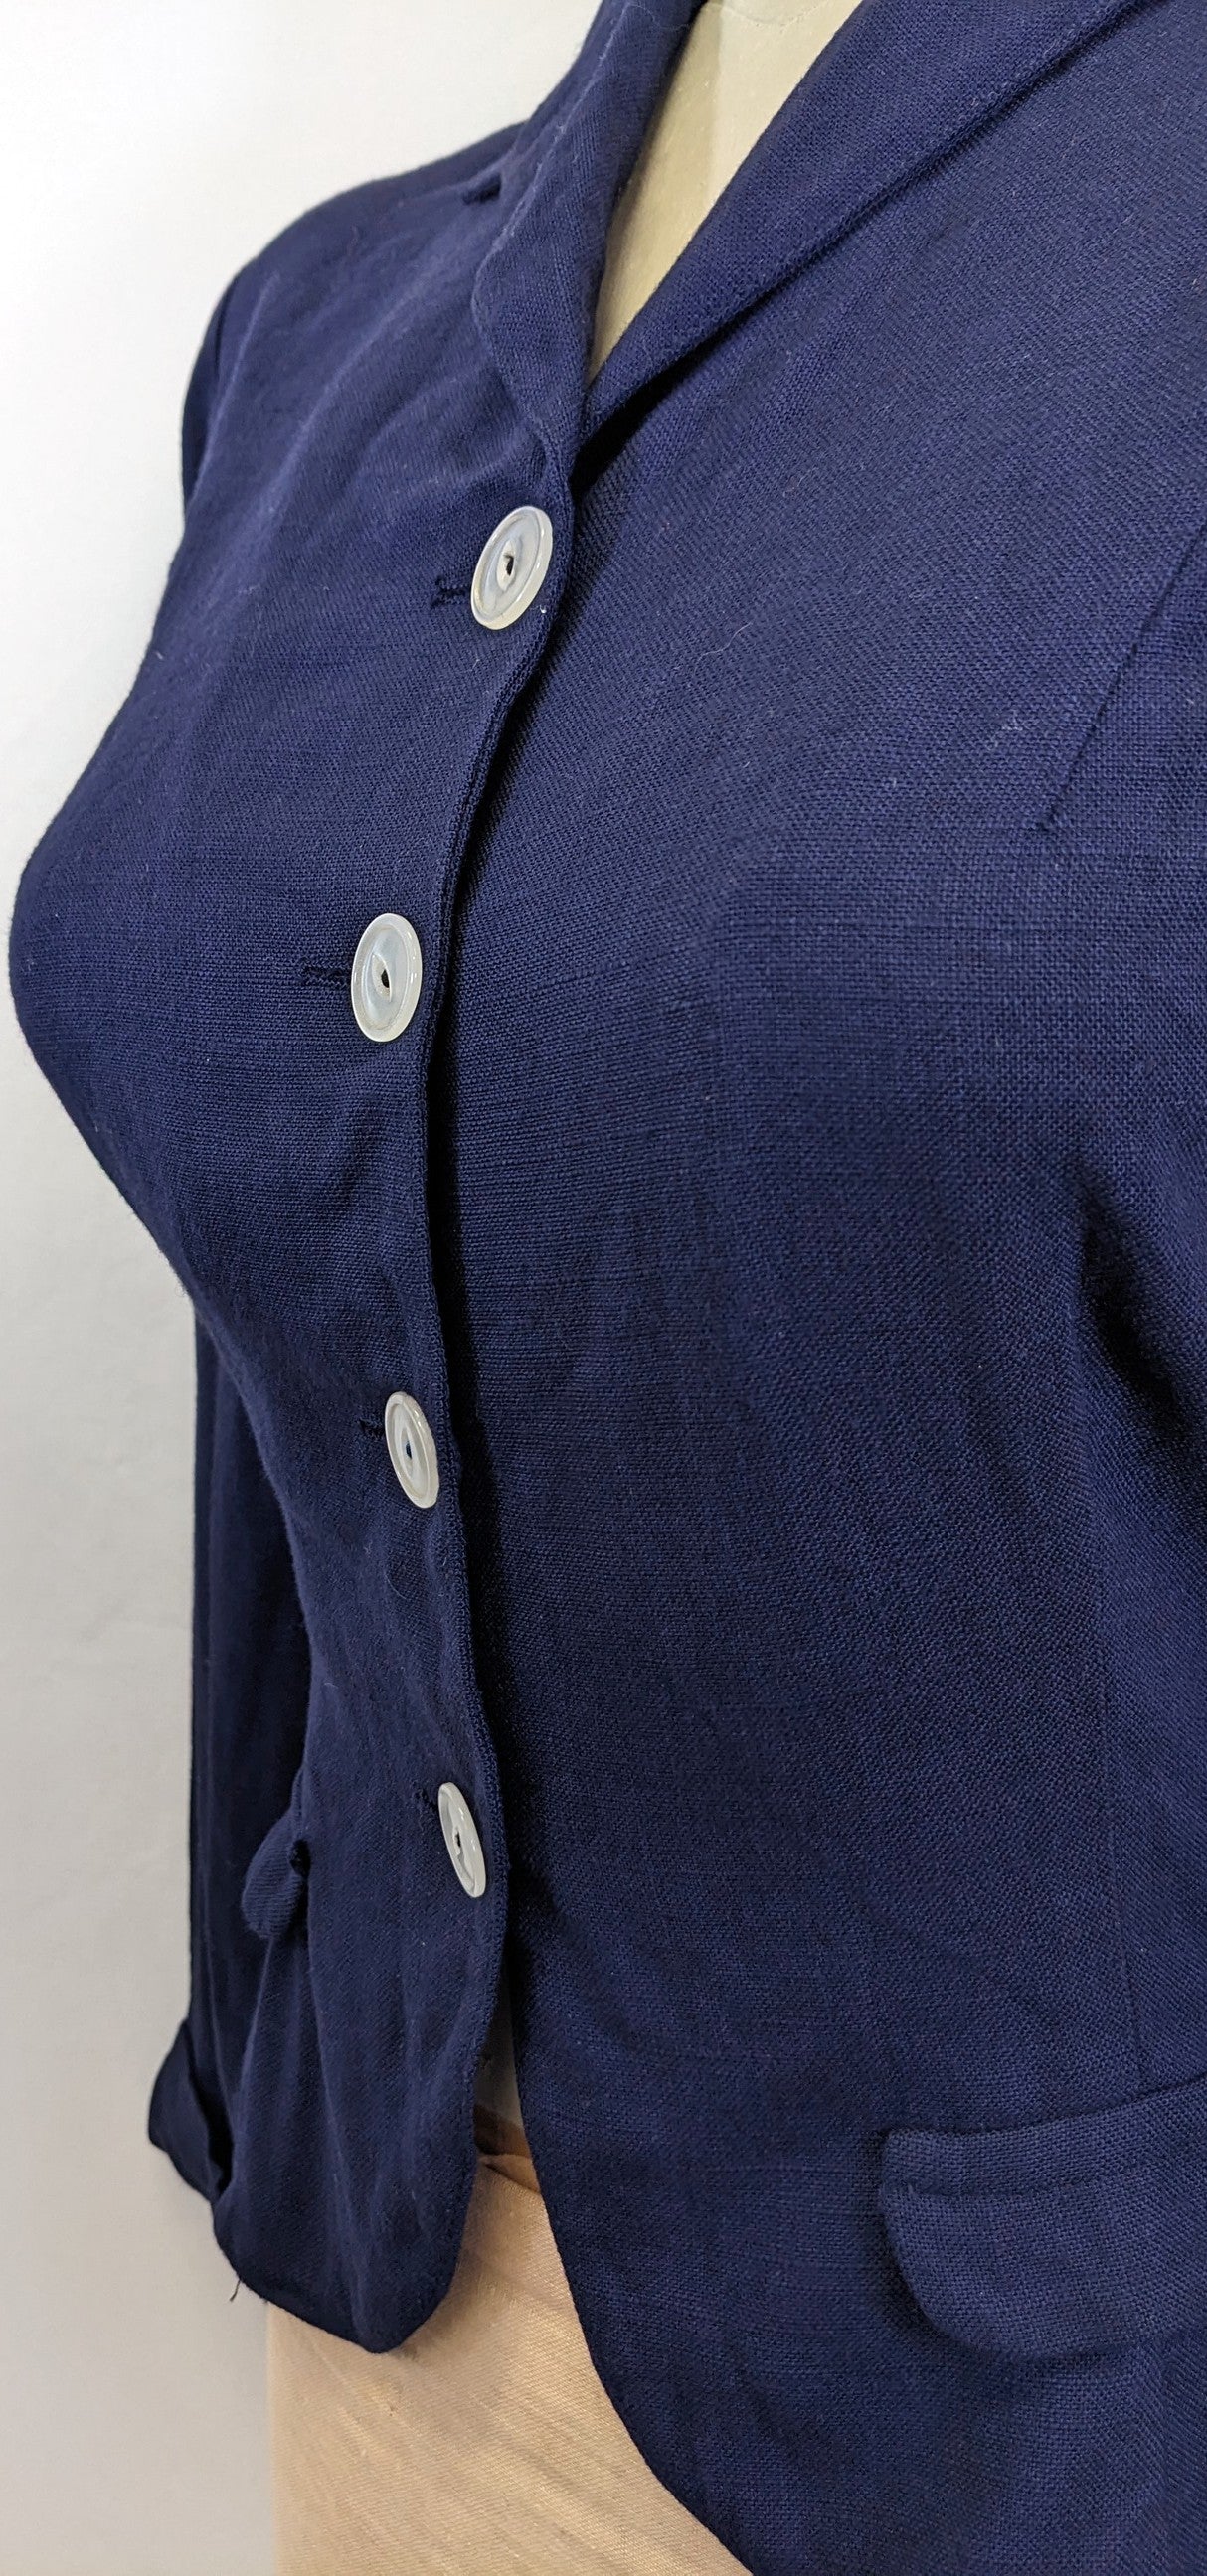 Late 1930s Linen/Cotton mix Jacket